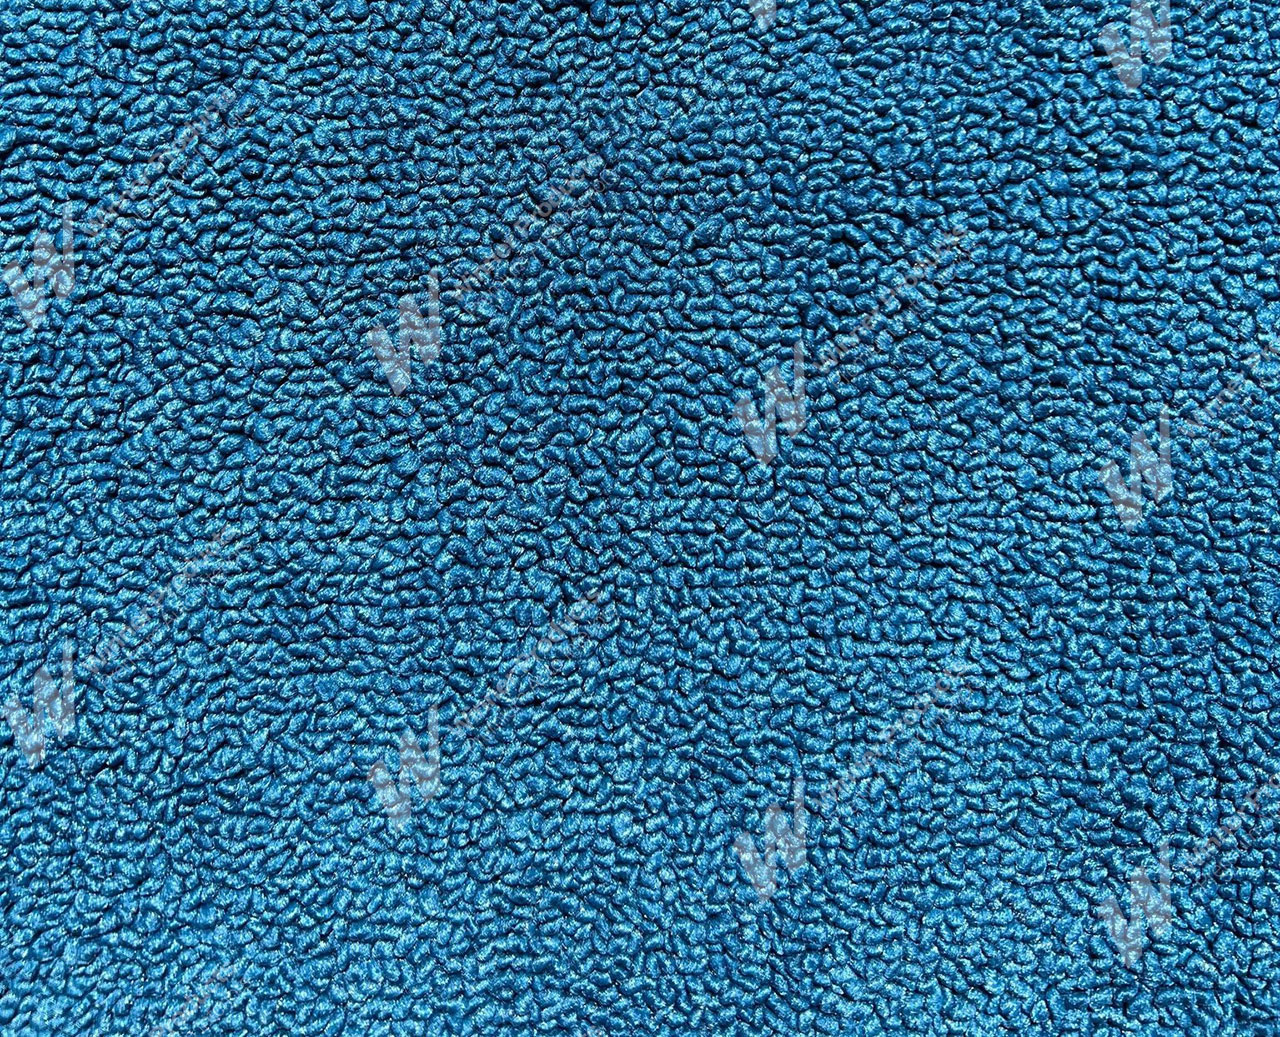 Holden Kingswood HG Kingswood Sedan 14E Twilight Blue Carpet (Image 1 of 1)